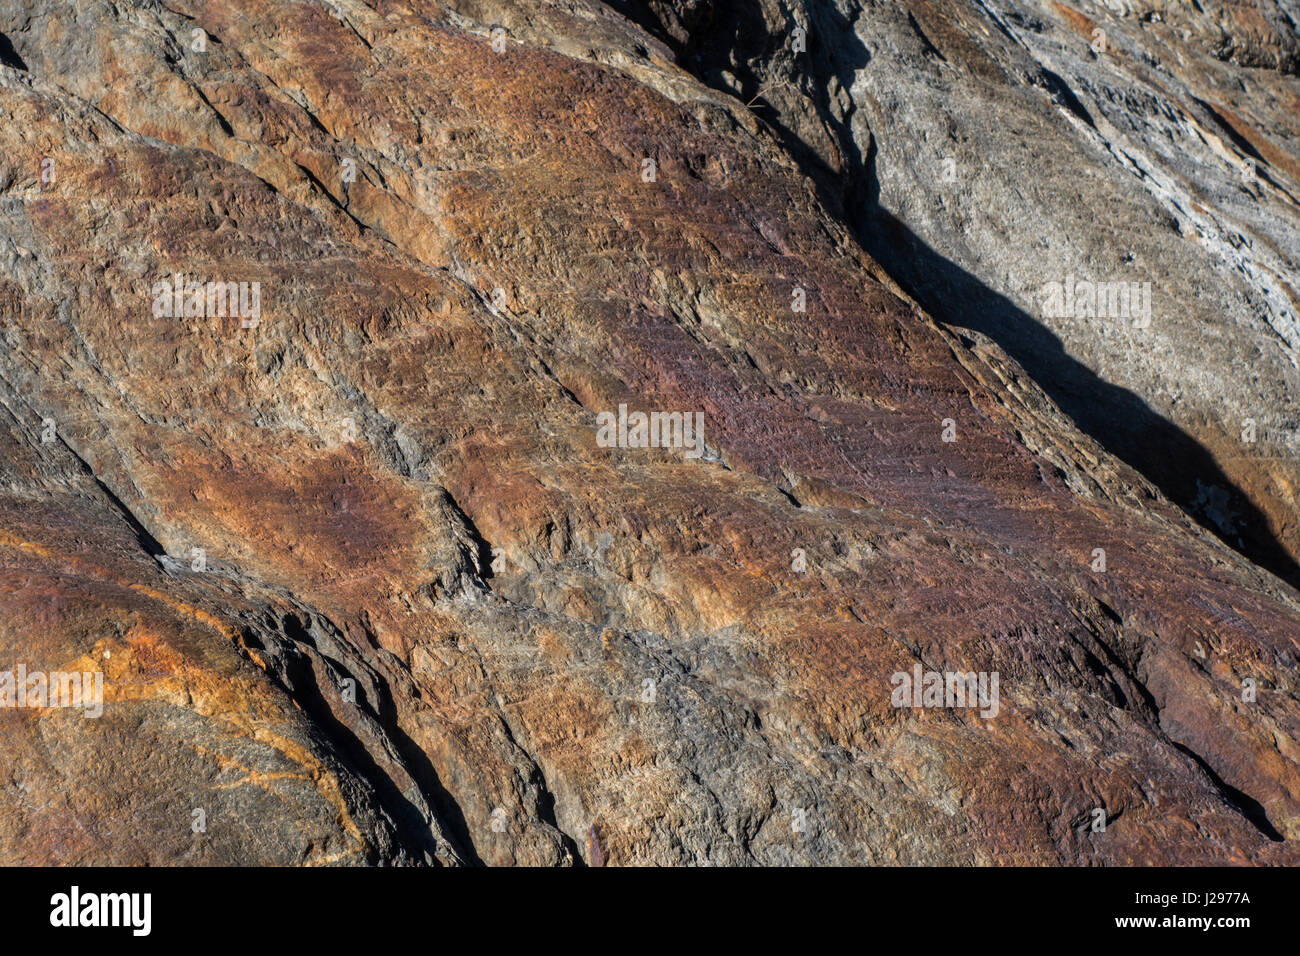 Dettaglio della roccia di granito con tracce di ferro rosso in superficie e spiovente con segni di erosione Foto Stock